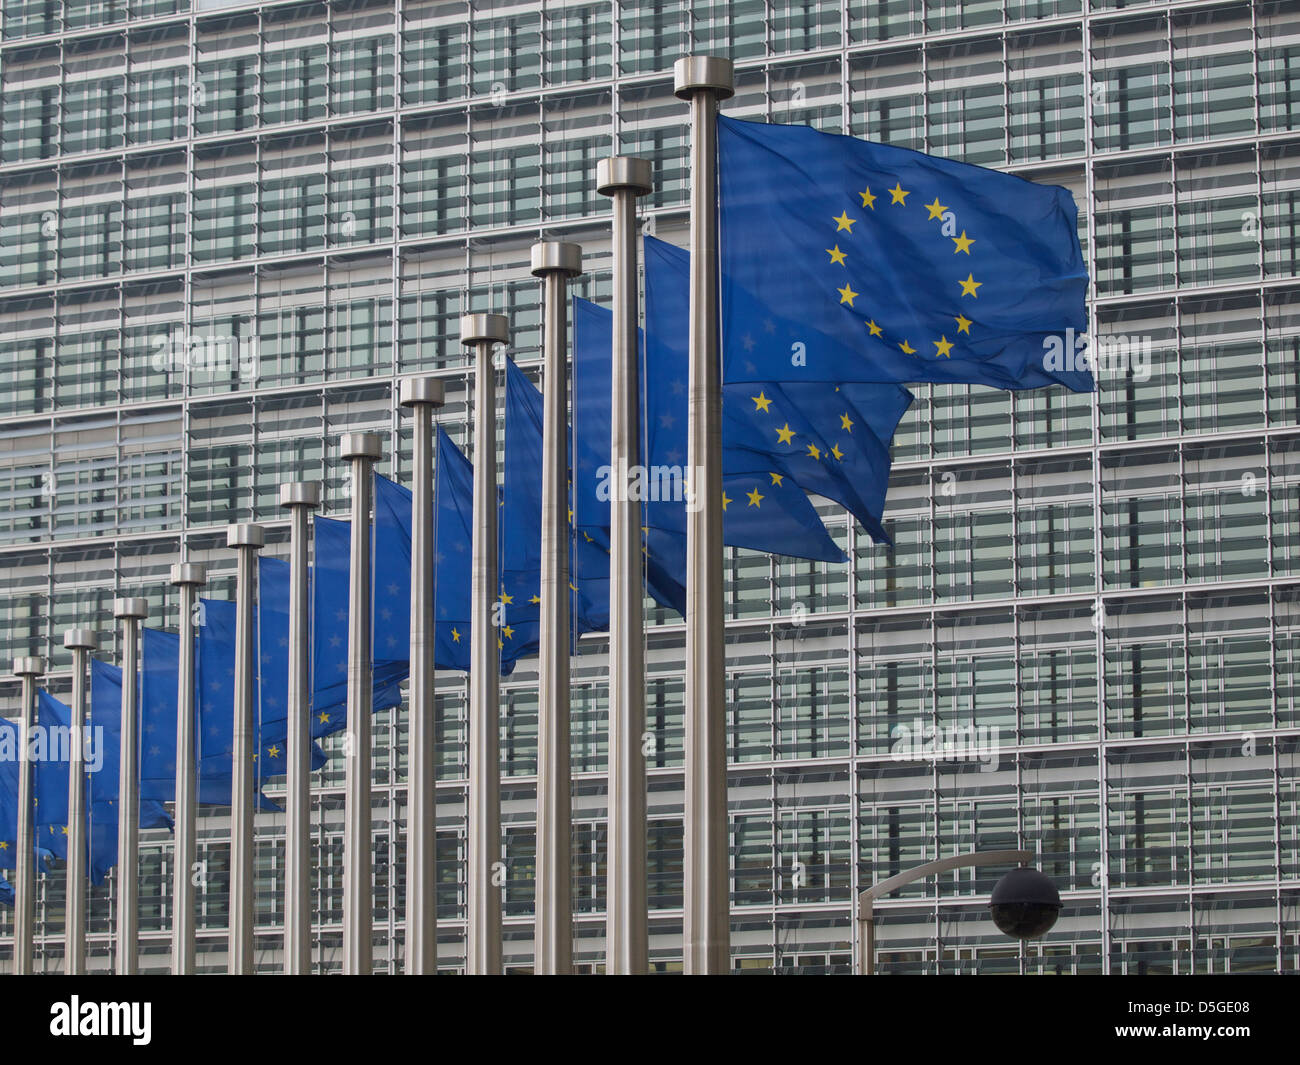 Drapeaux de l'Union européenne à l'avant du bâtiment Berlaymont de la Commission européenne à Bruxelles, Belgique Banque D'Images